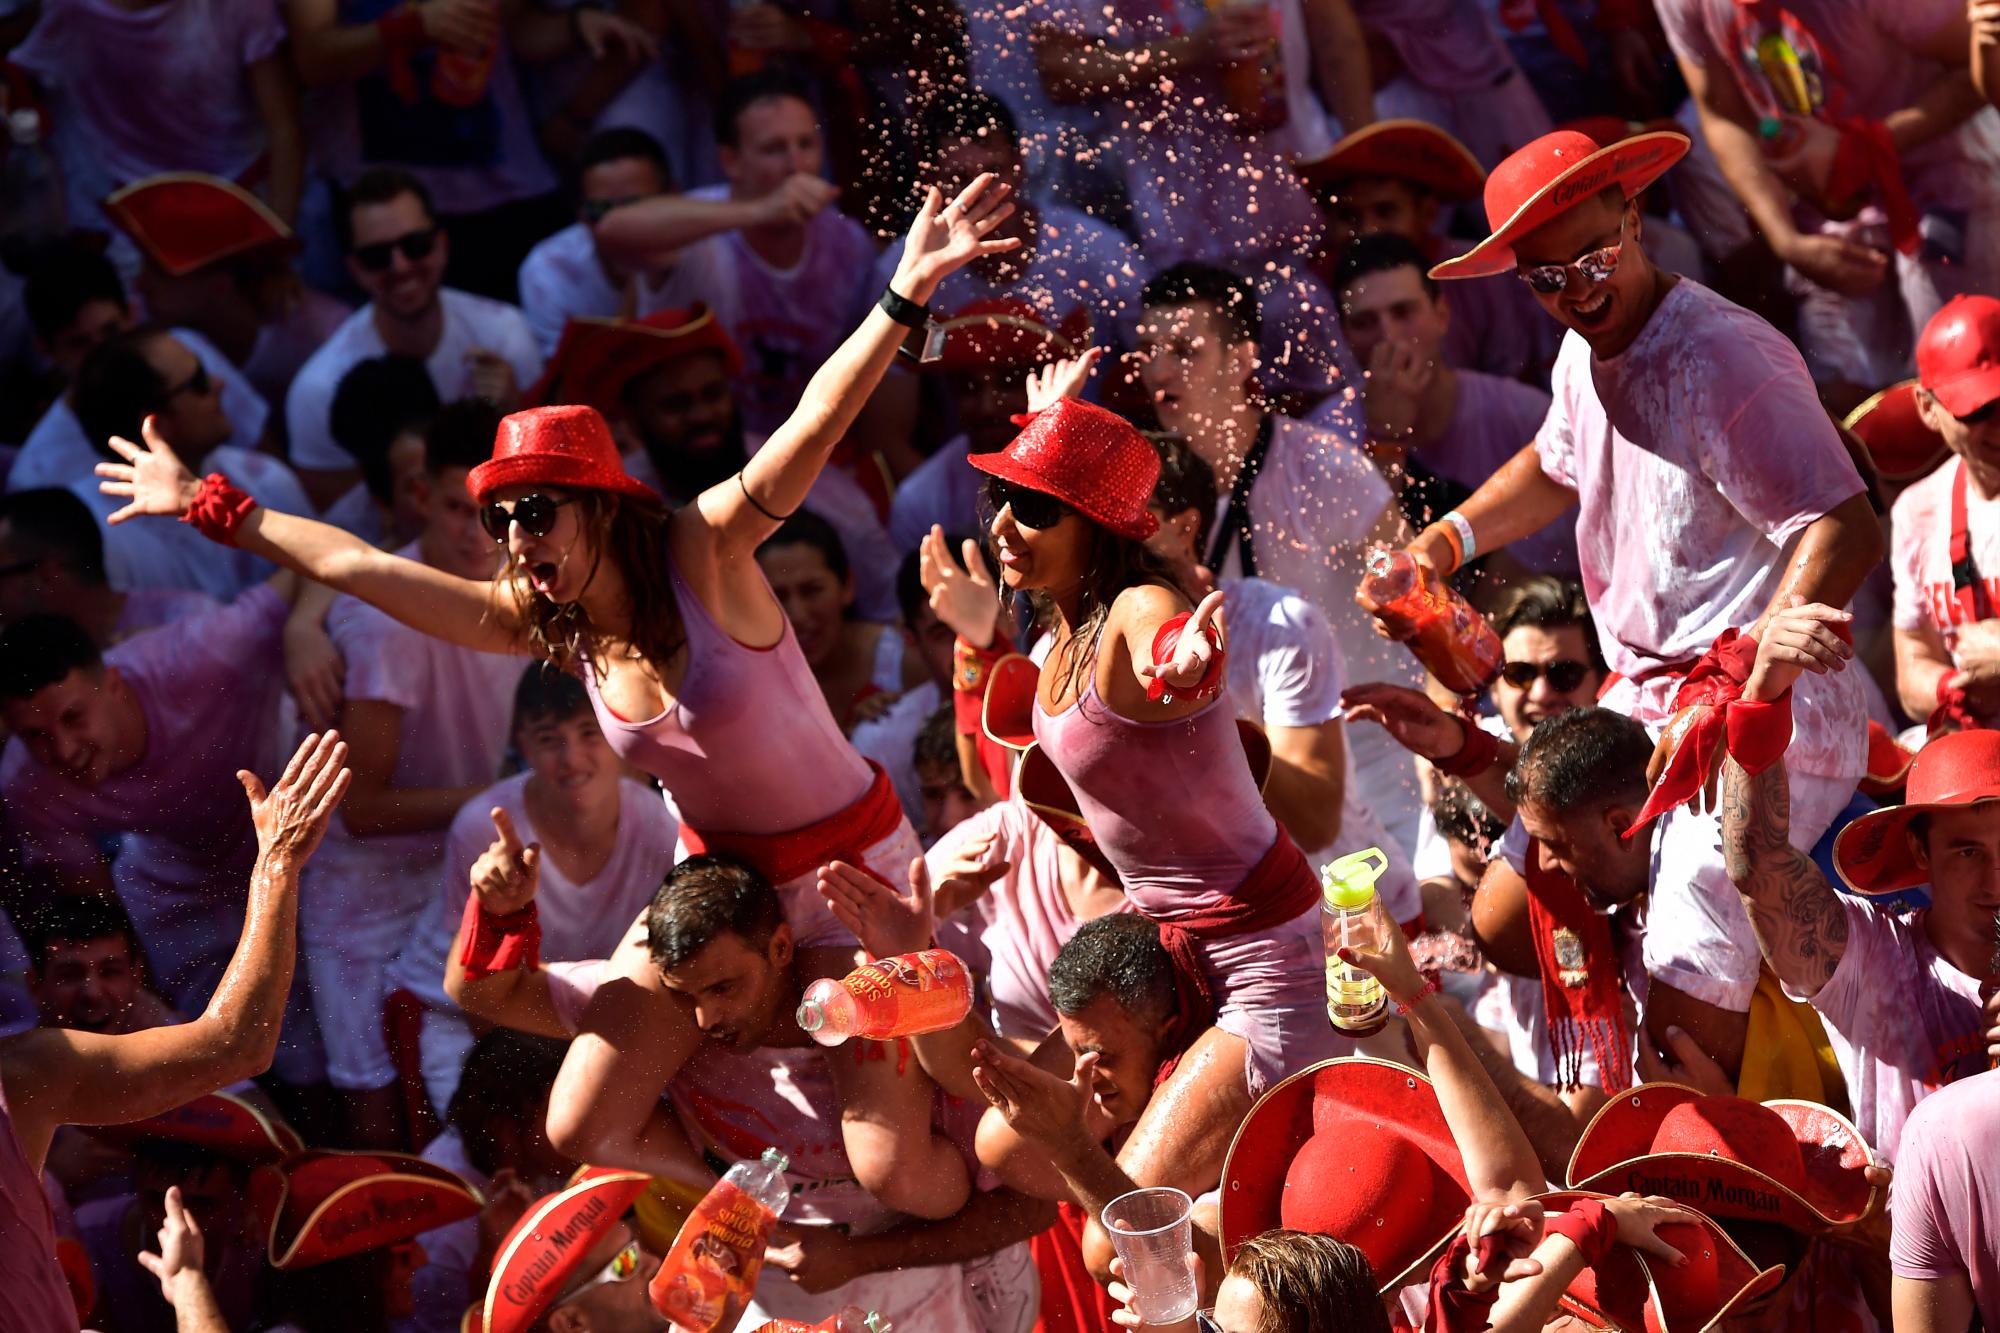 Participantes celebran mientras esperan el lanzamiento del cohete ‘Chupinazo’, para celebrar la apertura oficial de las fiestas de San Fermín 2019 con corridas de toros, corridas de toros, música y baile en Pamplona, España, el sábado 6 de julio de 2019.